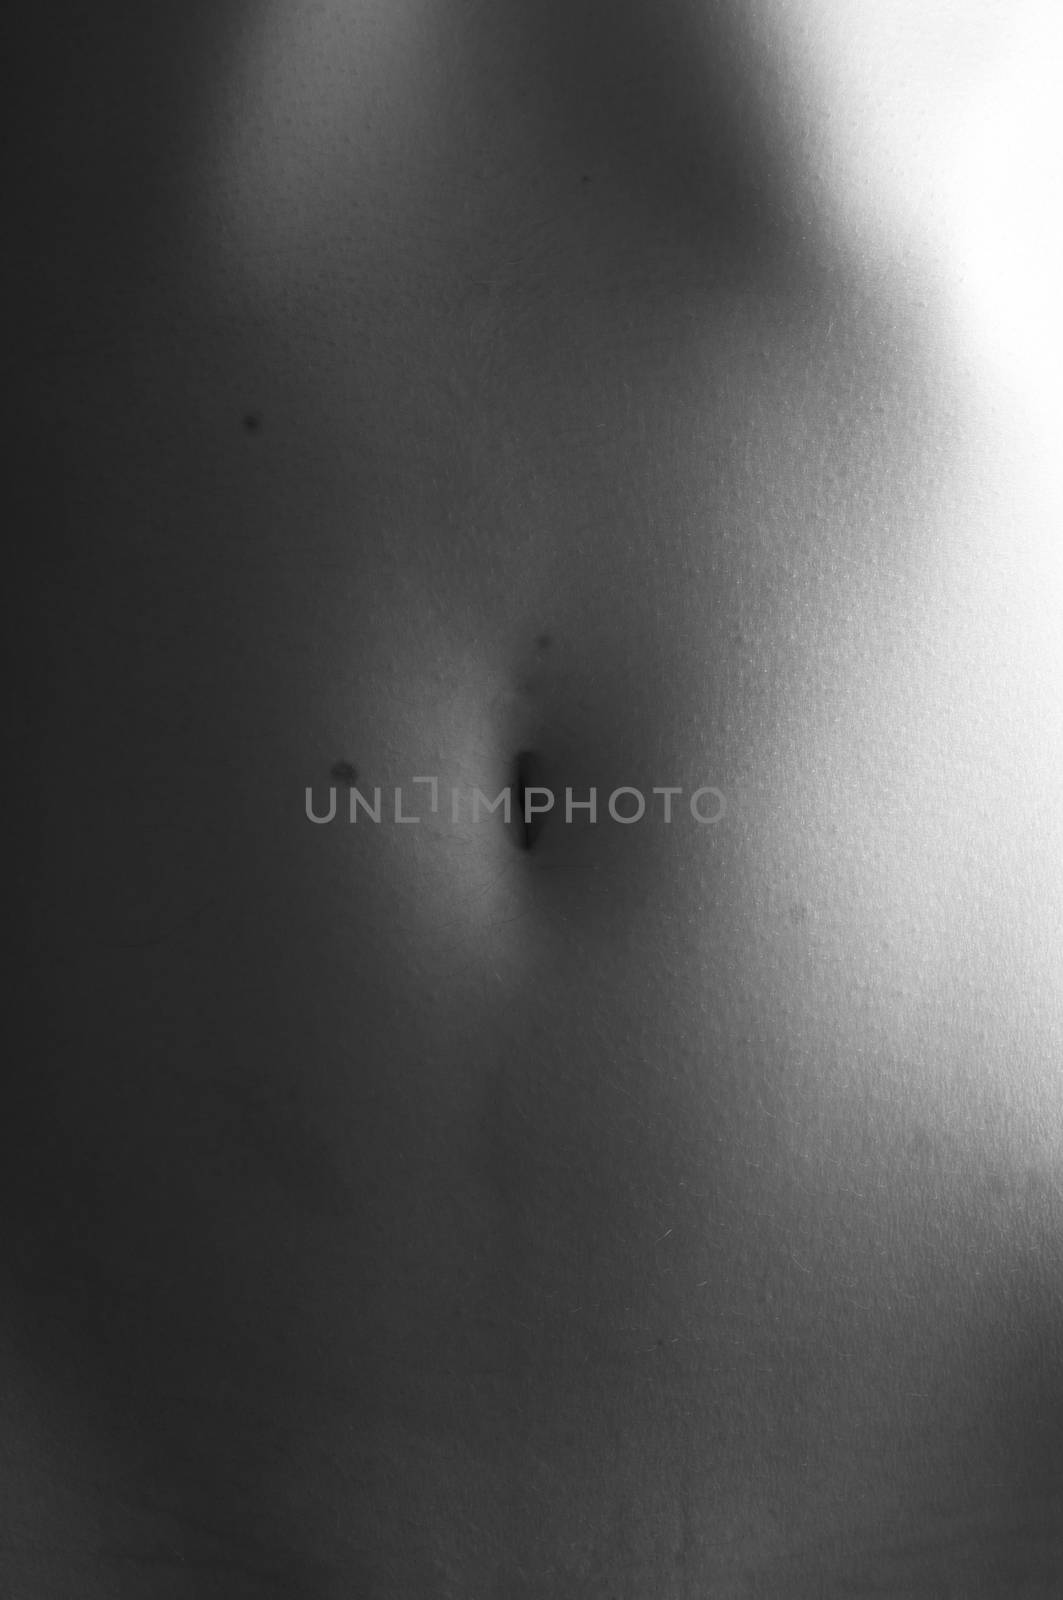 Female human navel by rodrigobellizzi